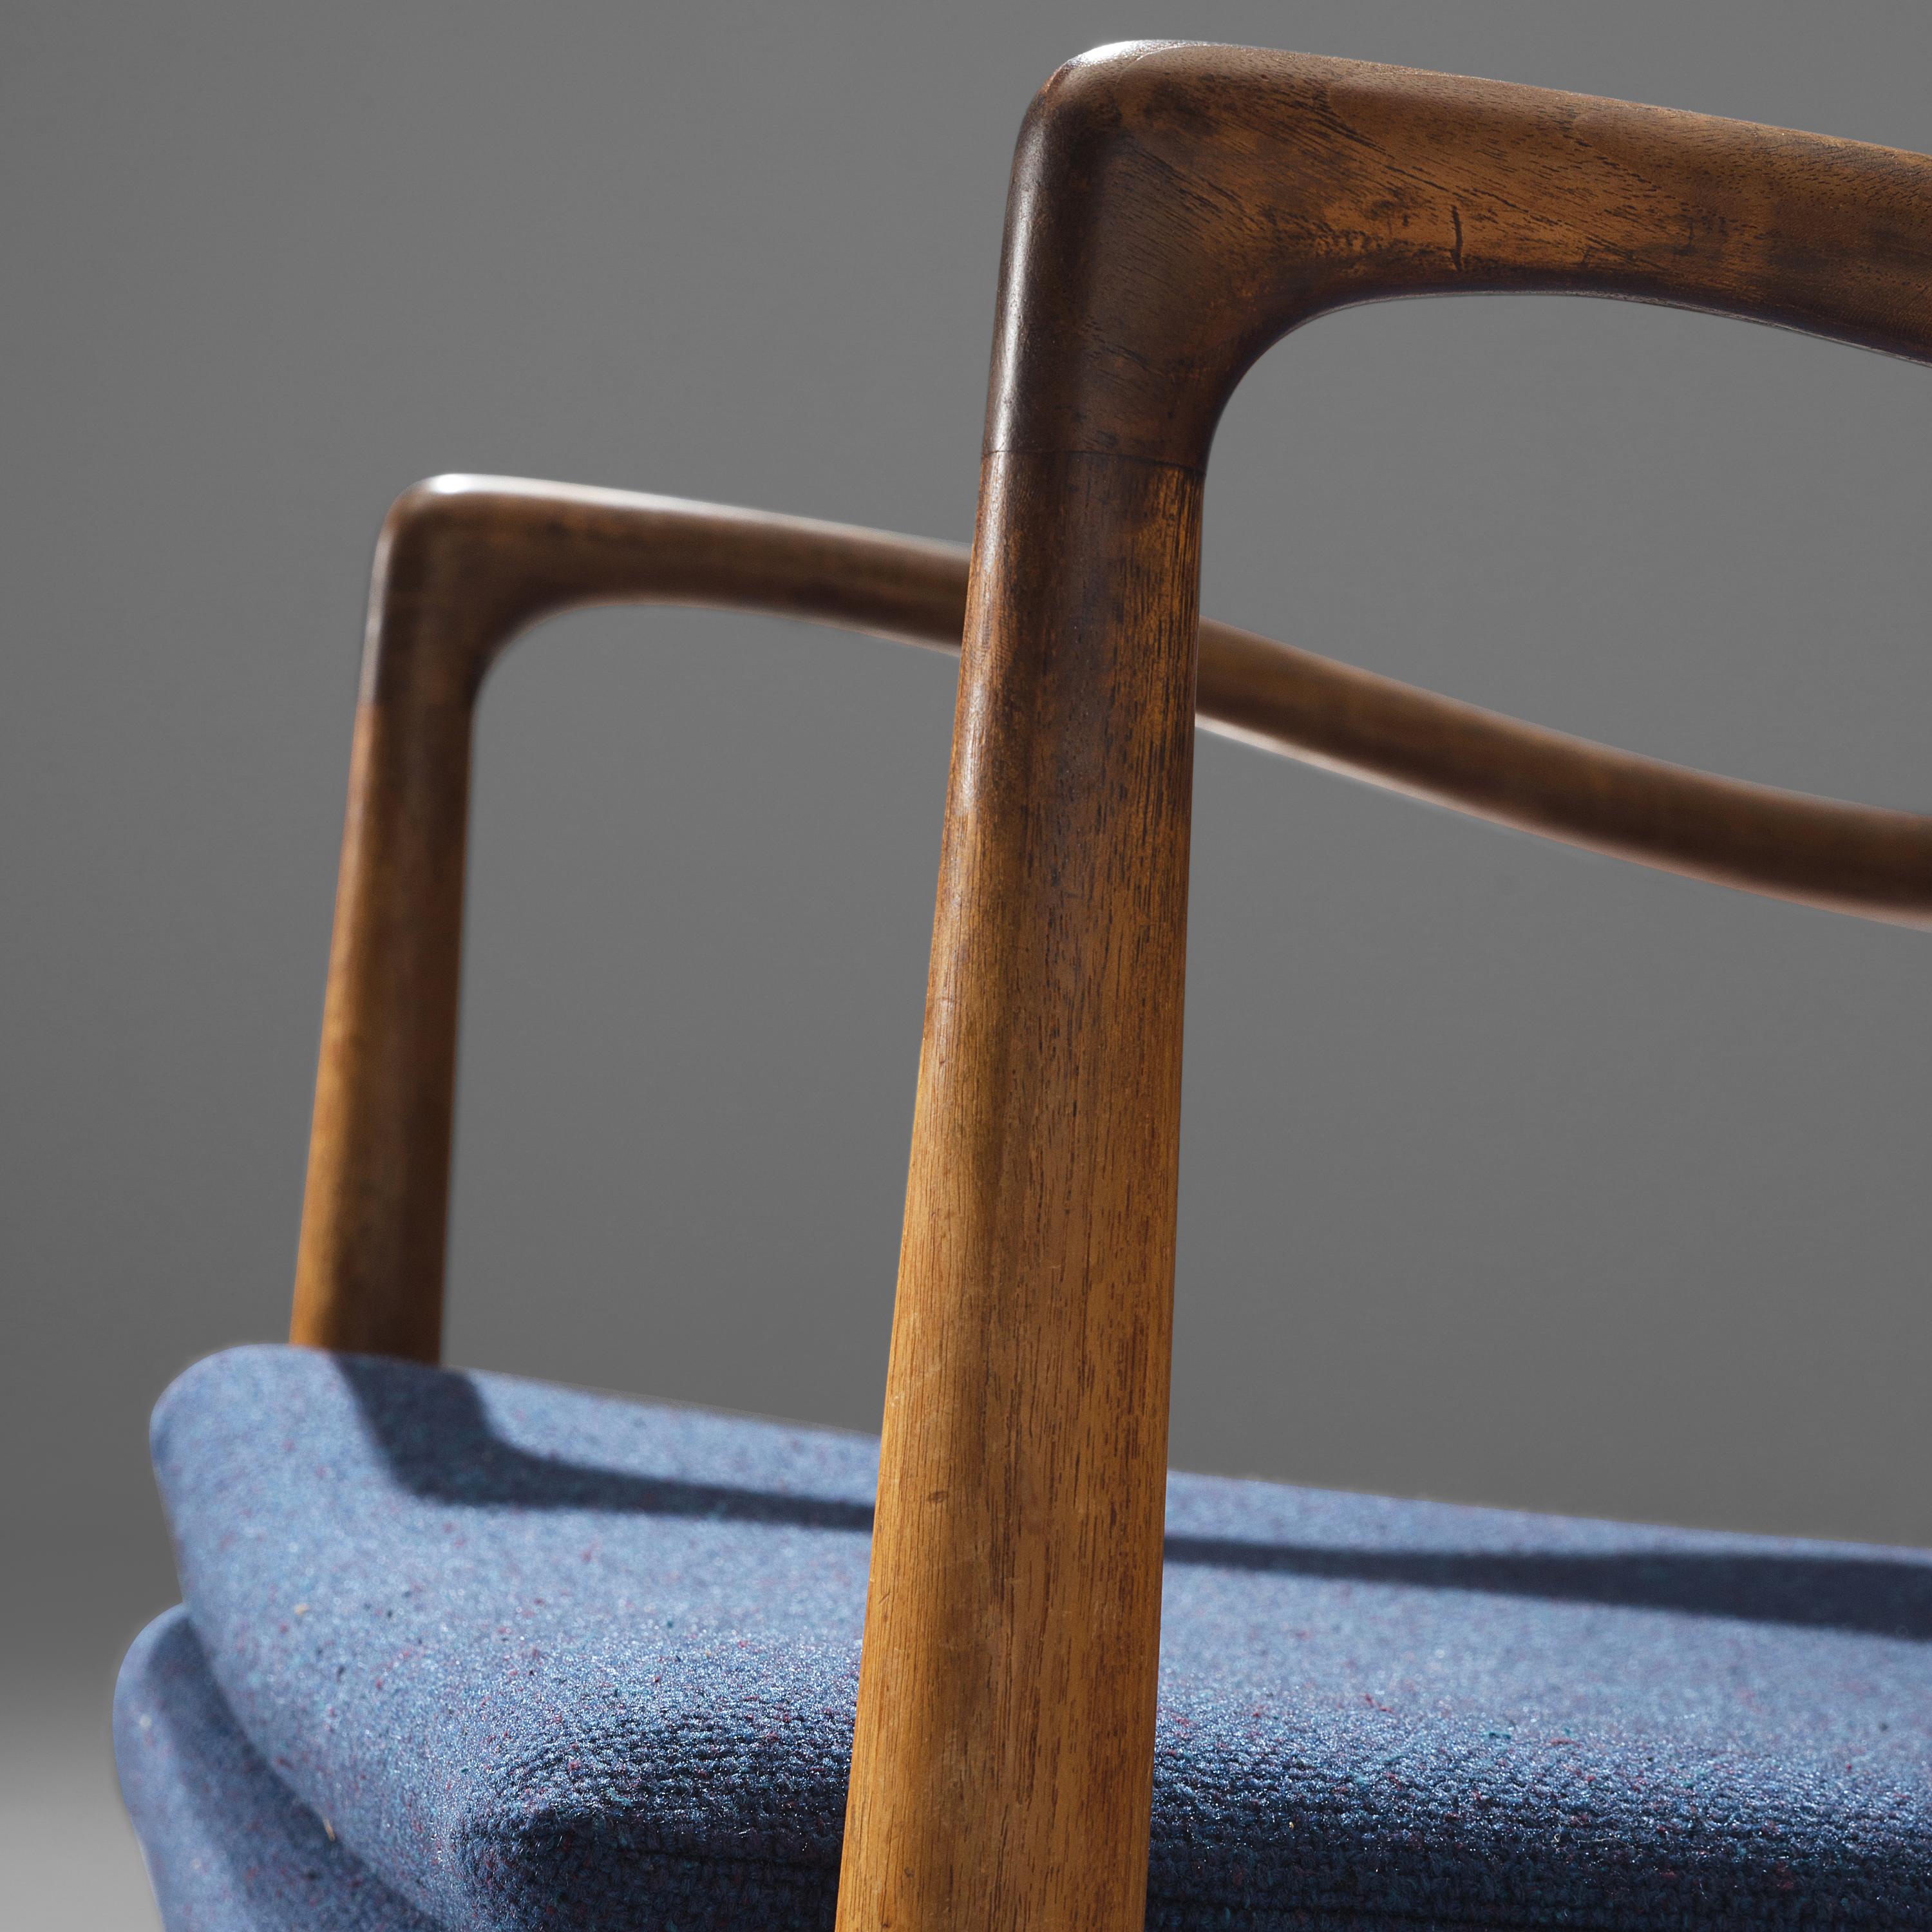 Scandinavian Modern Finn Juhl for Niels Vodder Armchair 'NV 45' in Teak and Blue Fabric Upholstery